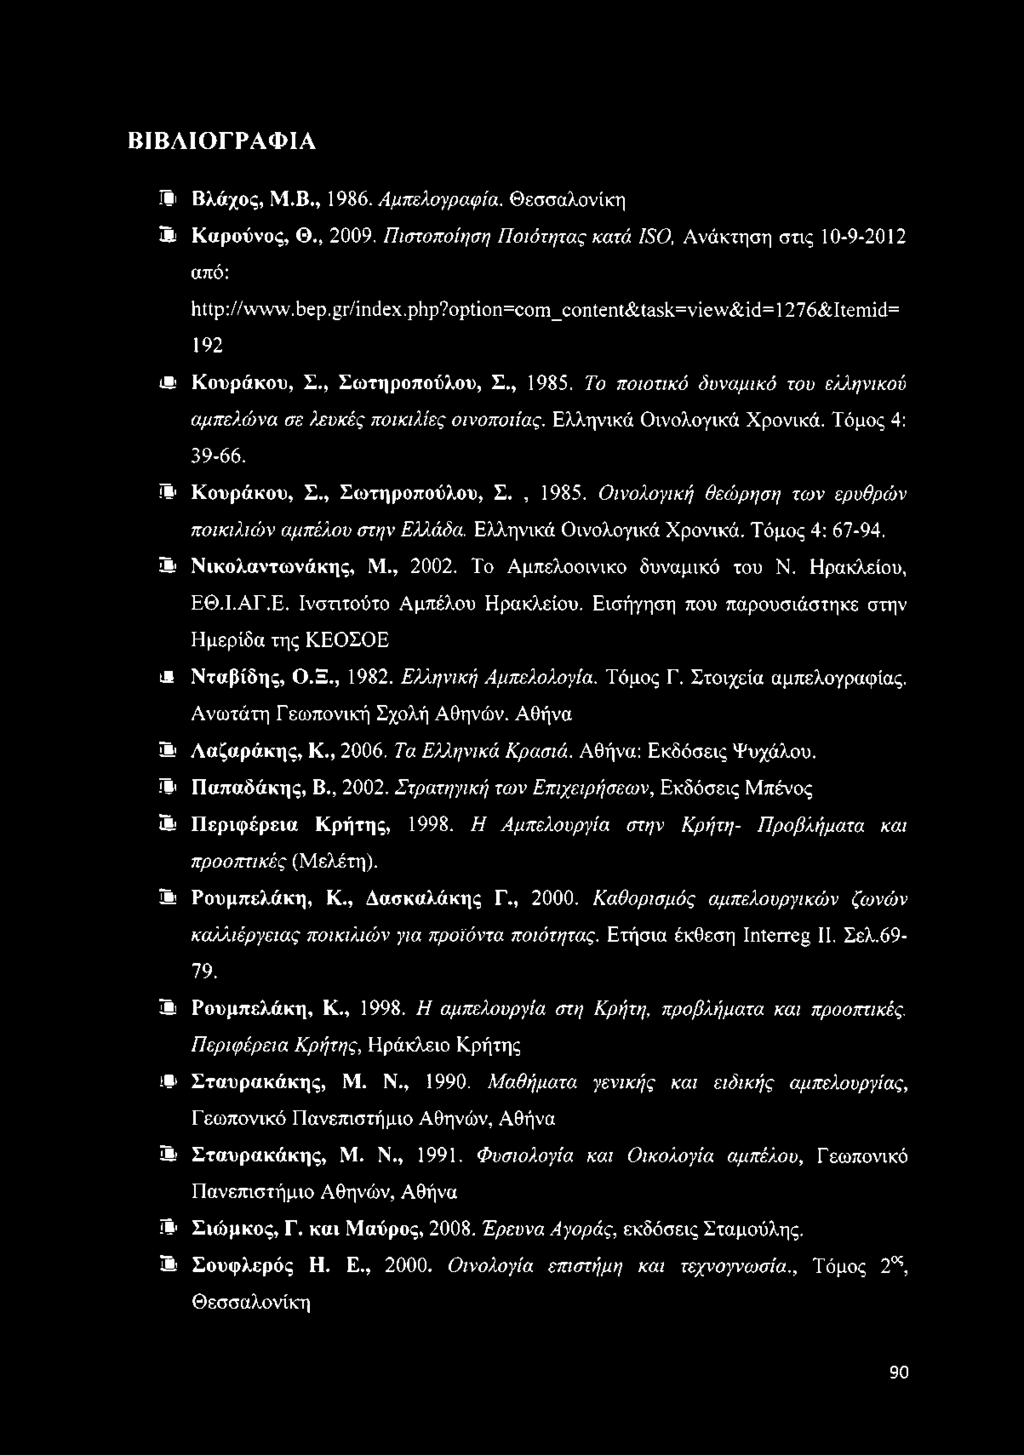 Ελληνικά Οινολογικά Χρονικά. Τόμος 4: 39-66. ίΐ1 Κουράκου, Σ., Σωτηροπούλου, Σ., 1985. Οινολογική θεώρηση των ερυθρών ποικιλιών αμπέλου στην Ελλάδα. Ελληνικά Οινολογικά Χρονικά. Τόμος 4: 67-94.